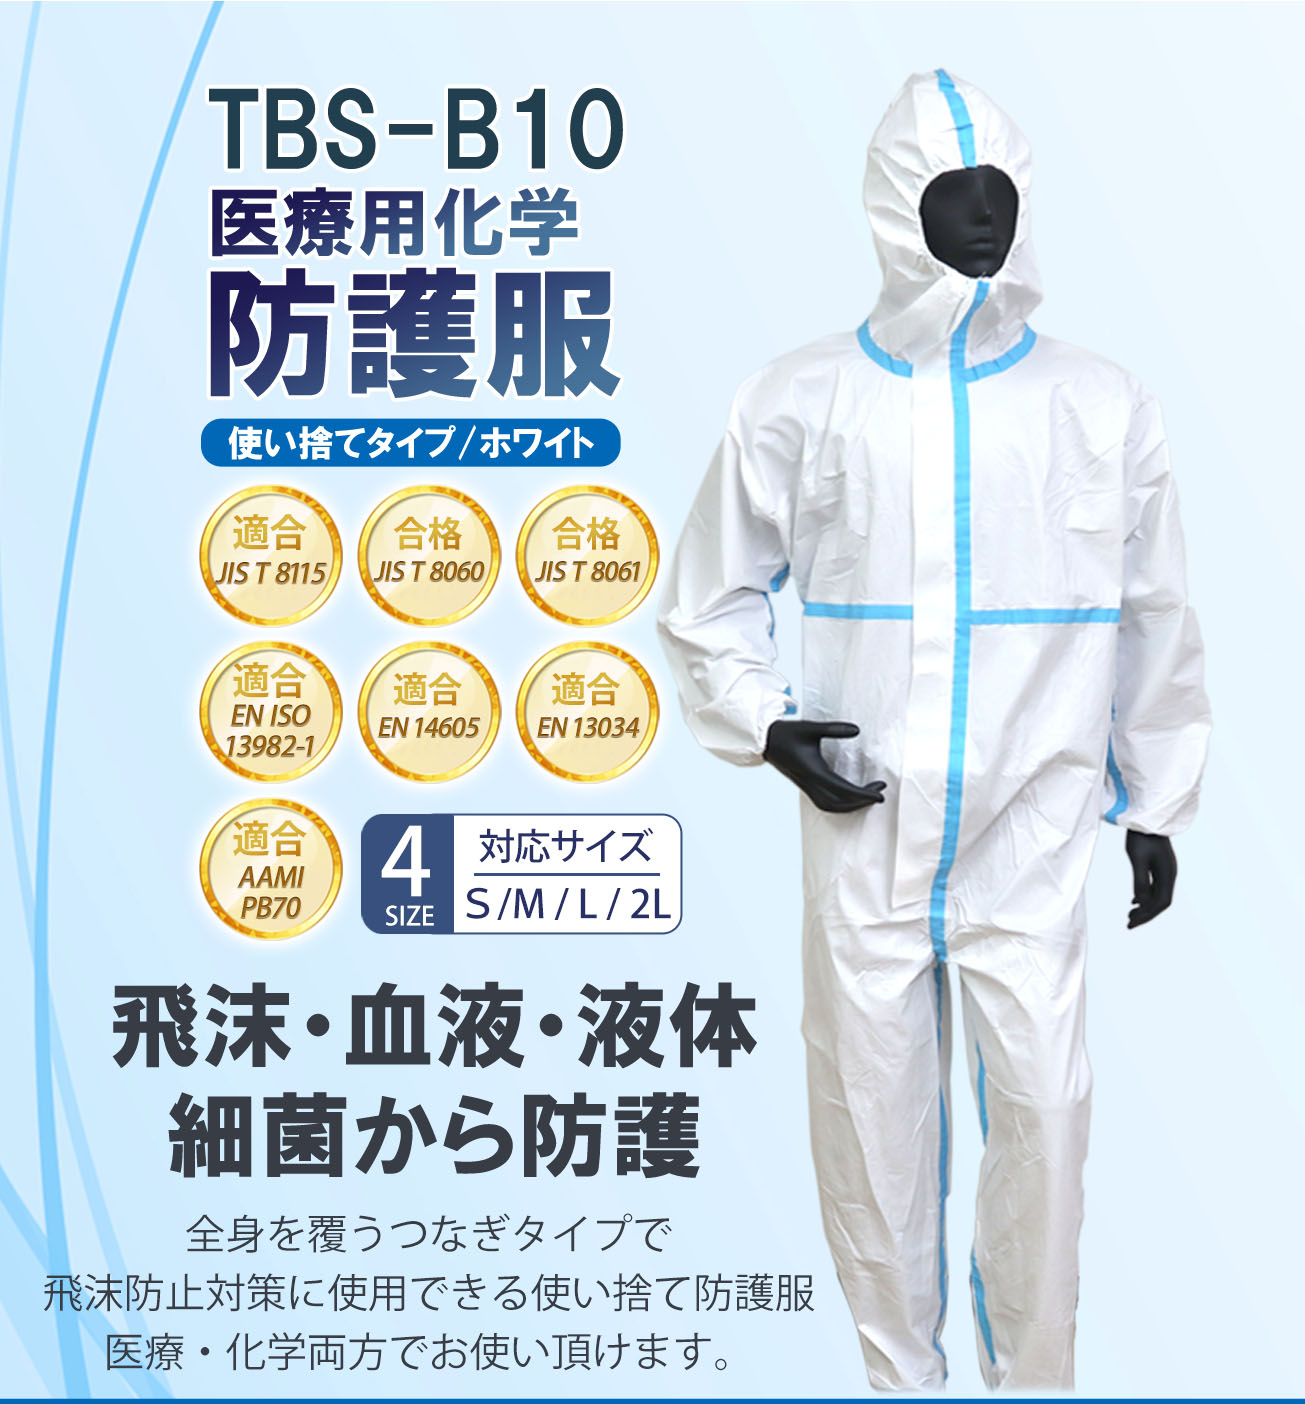 【つばさ】TBS-B10 医療用化学 防護服 Mサイズ 医療用 不織布 ウイルス 滅菌 個包装 白 使い捨て 病院 Tsubasa